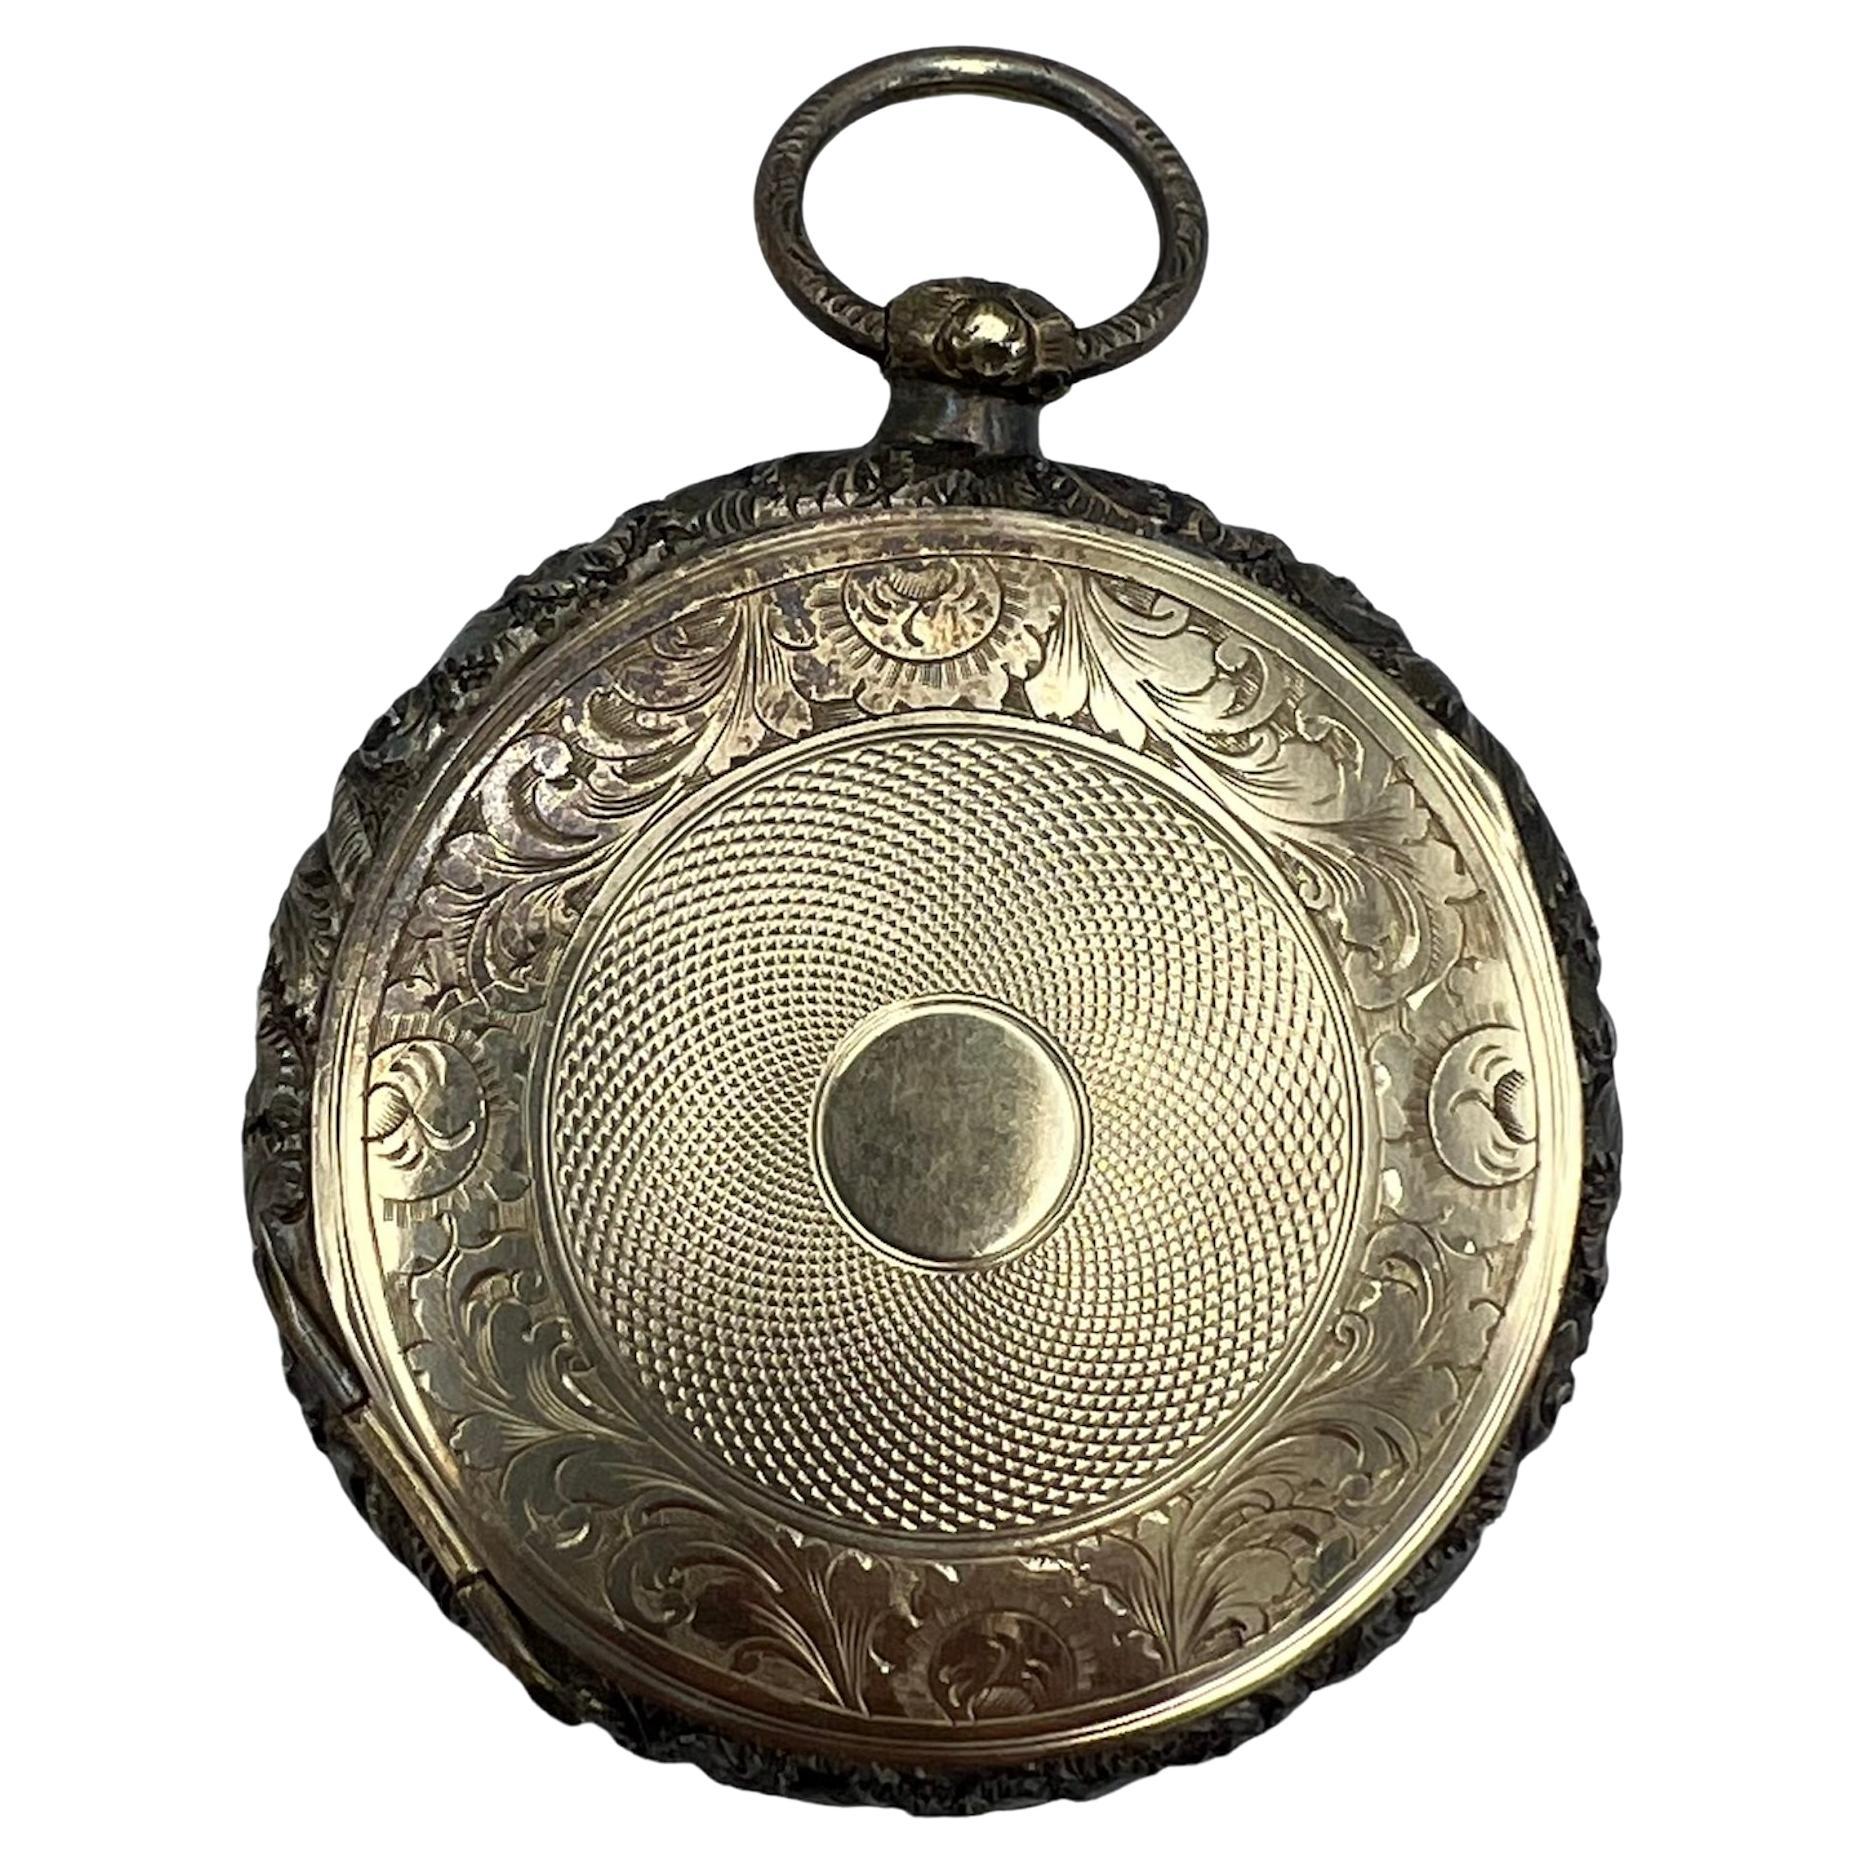 Viktorianisches Medaillon aus Gold und Silber mit Pillbox-Anhänger